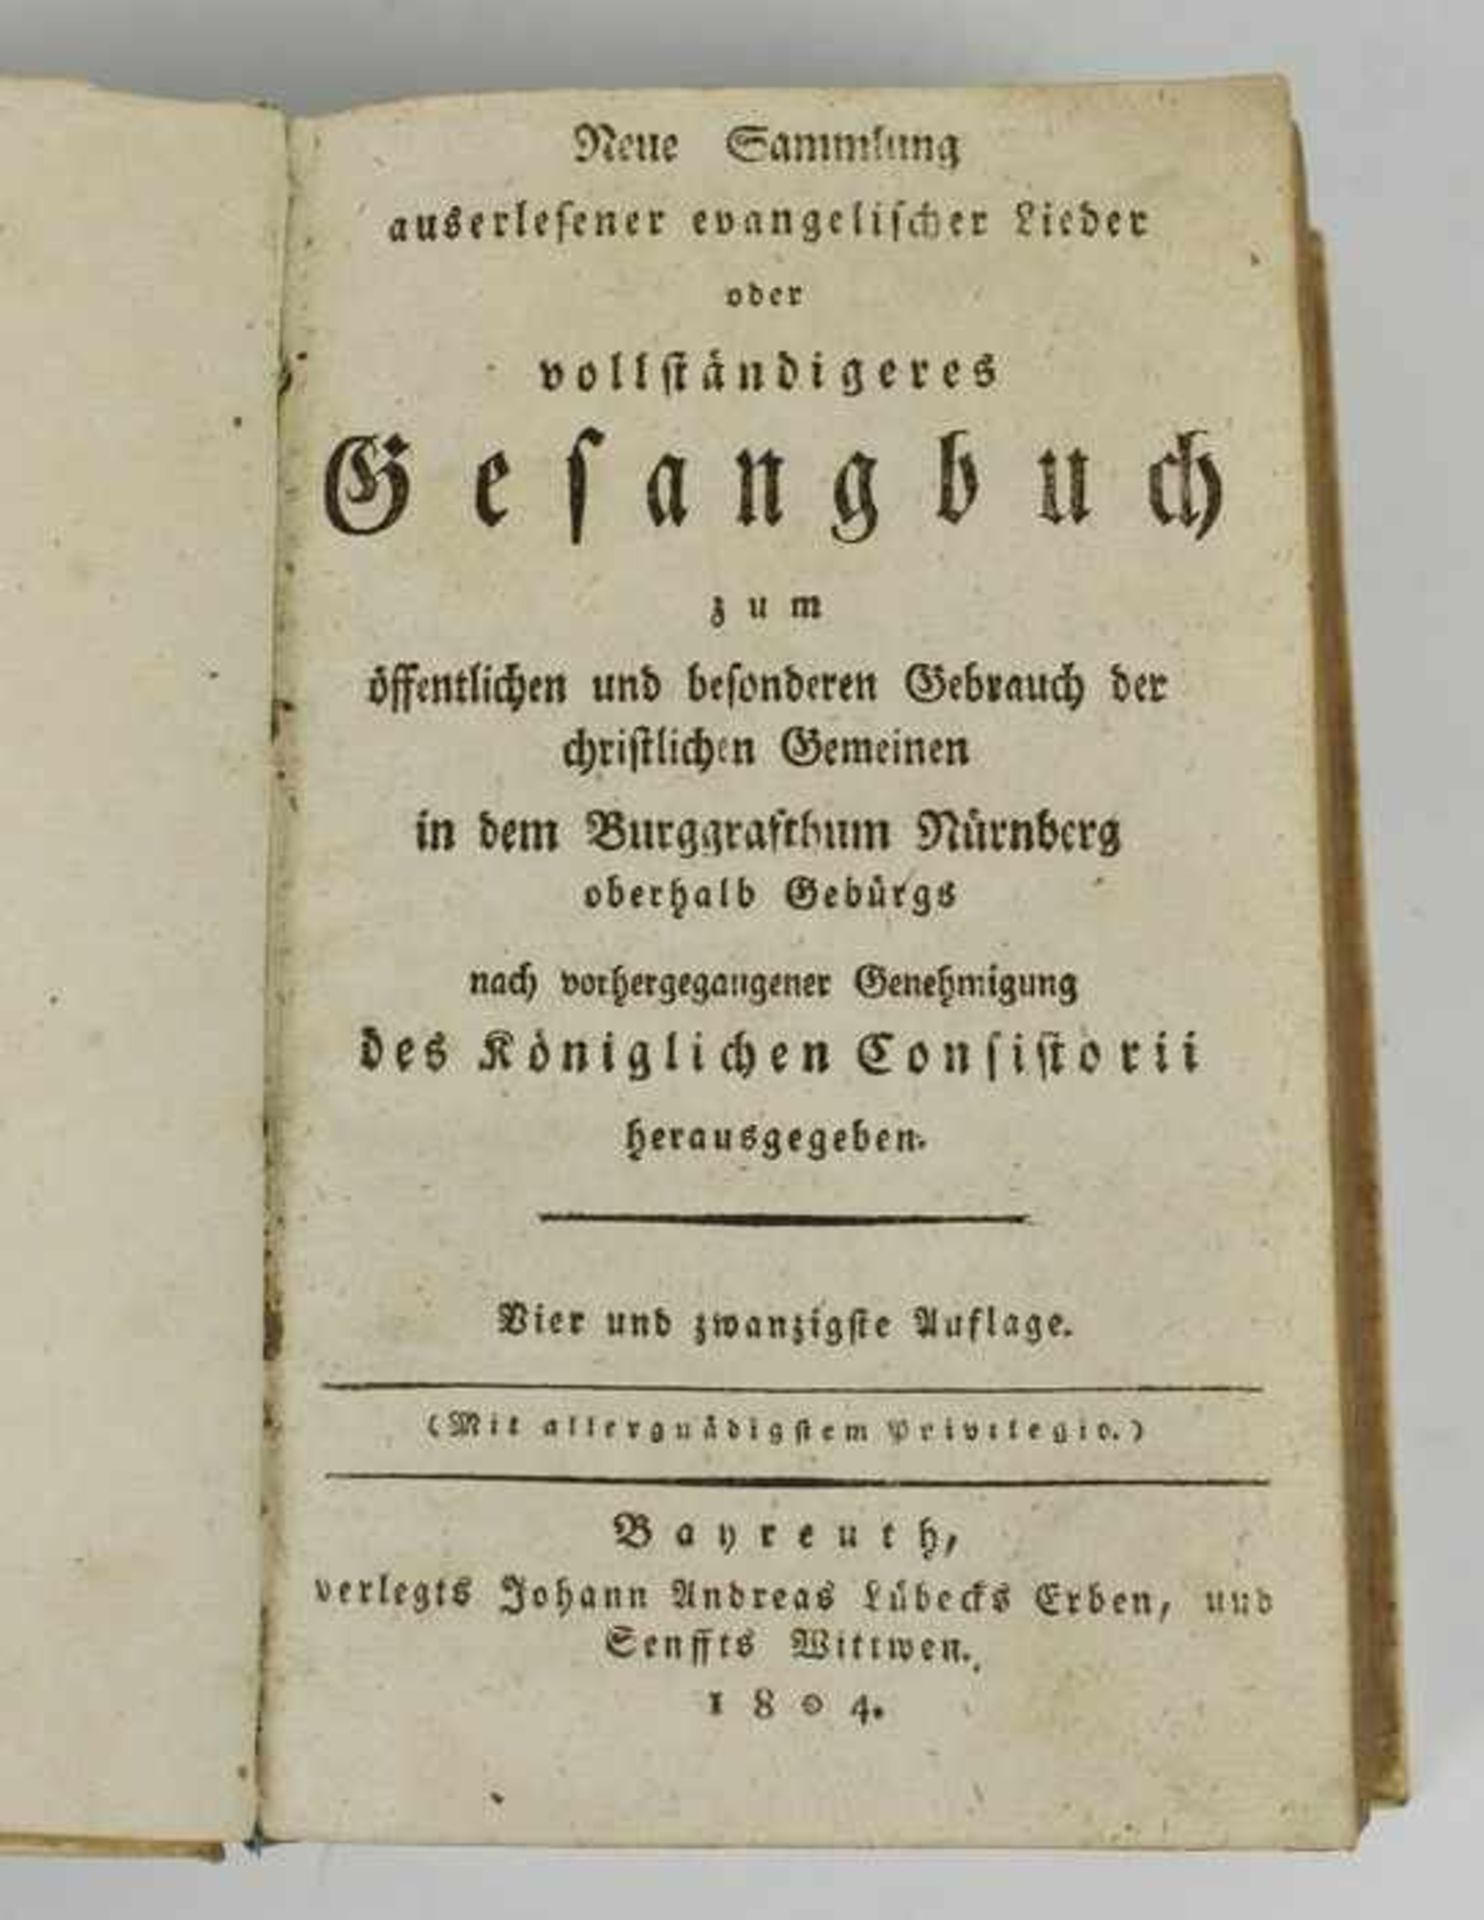 Gesangbuch"Neue Sammlung auserlesener evangelischer Lieder oder vollständigeres Gesangbuch zum